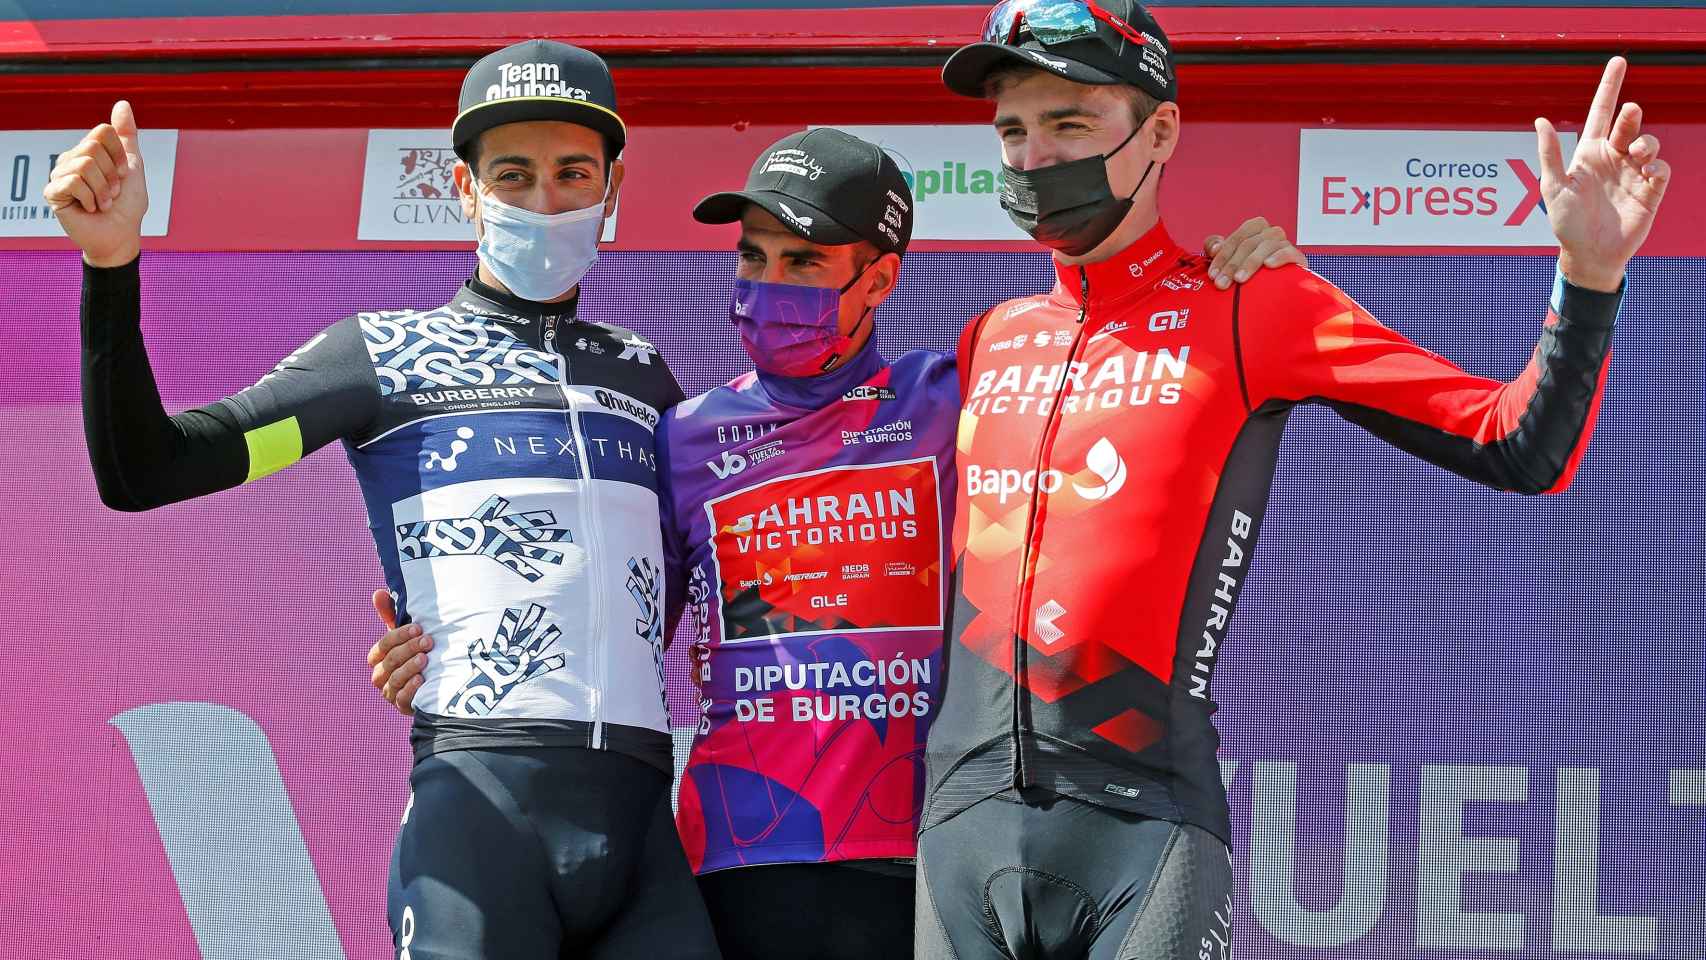 Mikel Landa, Fabio Aru y Padun en el podio de la Vuelta a Burgos 2021